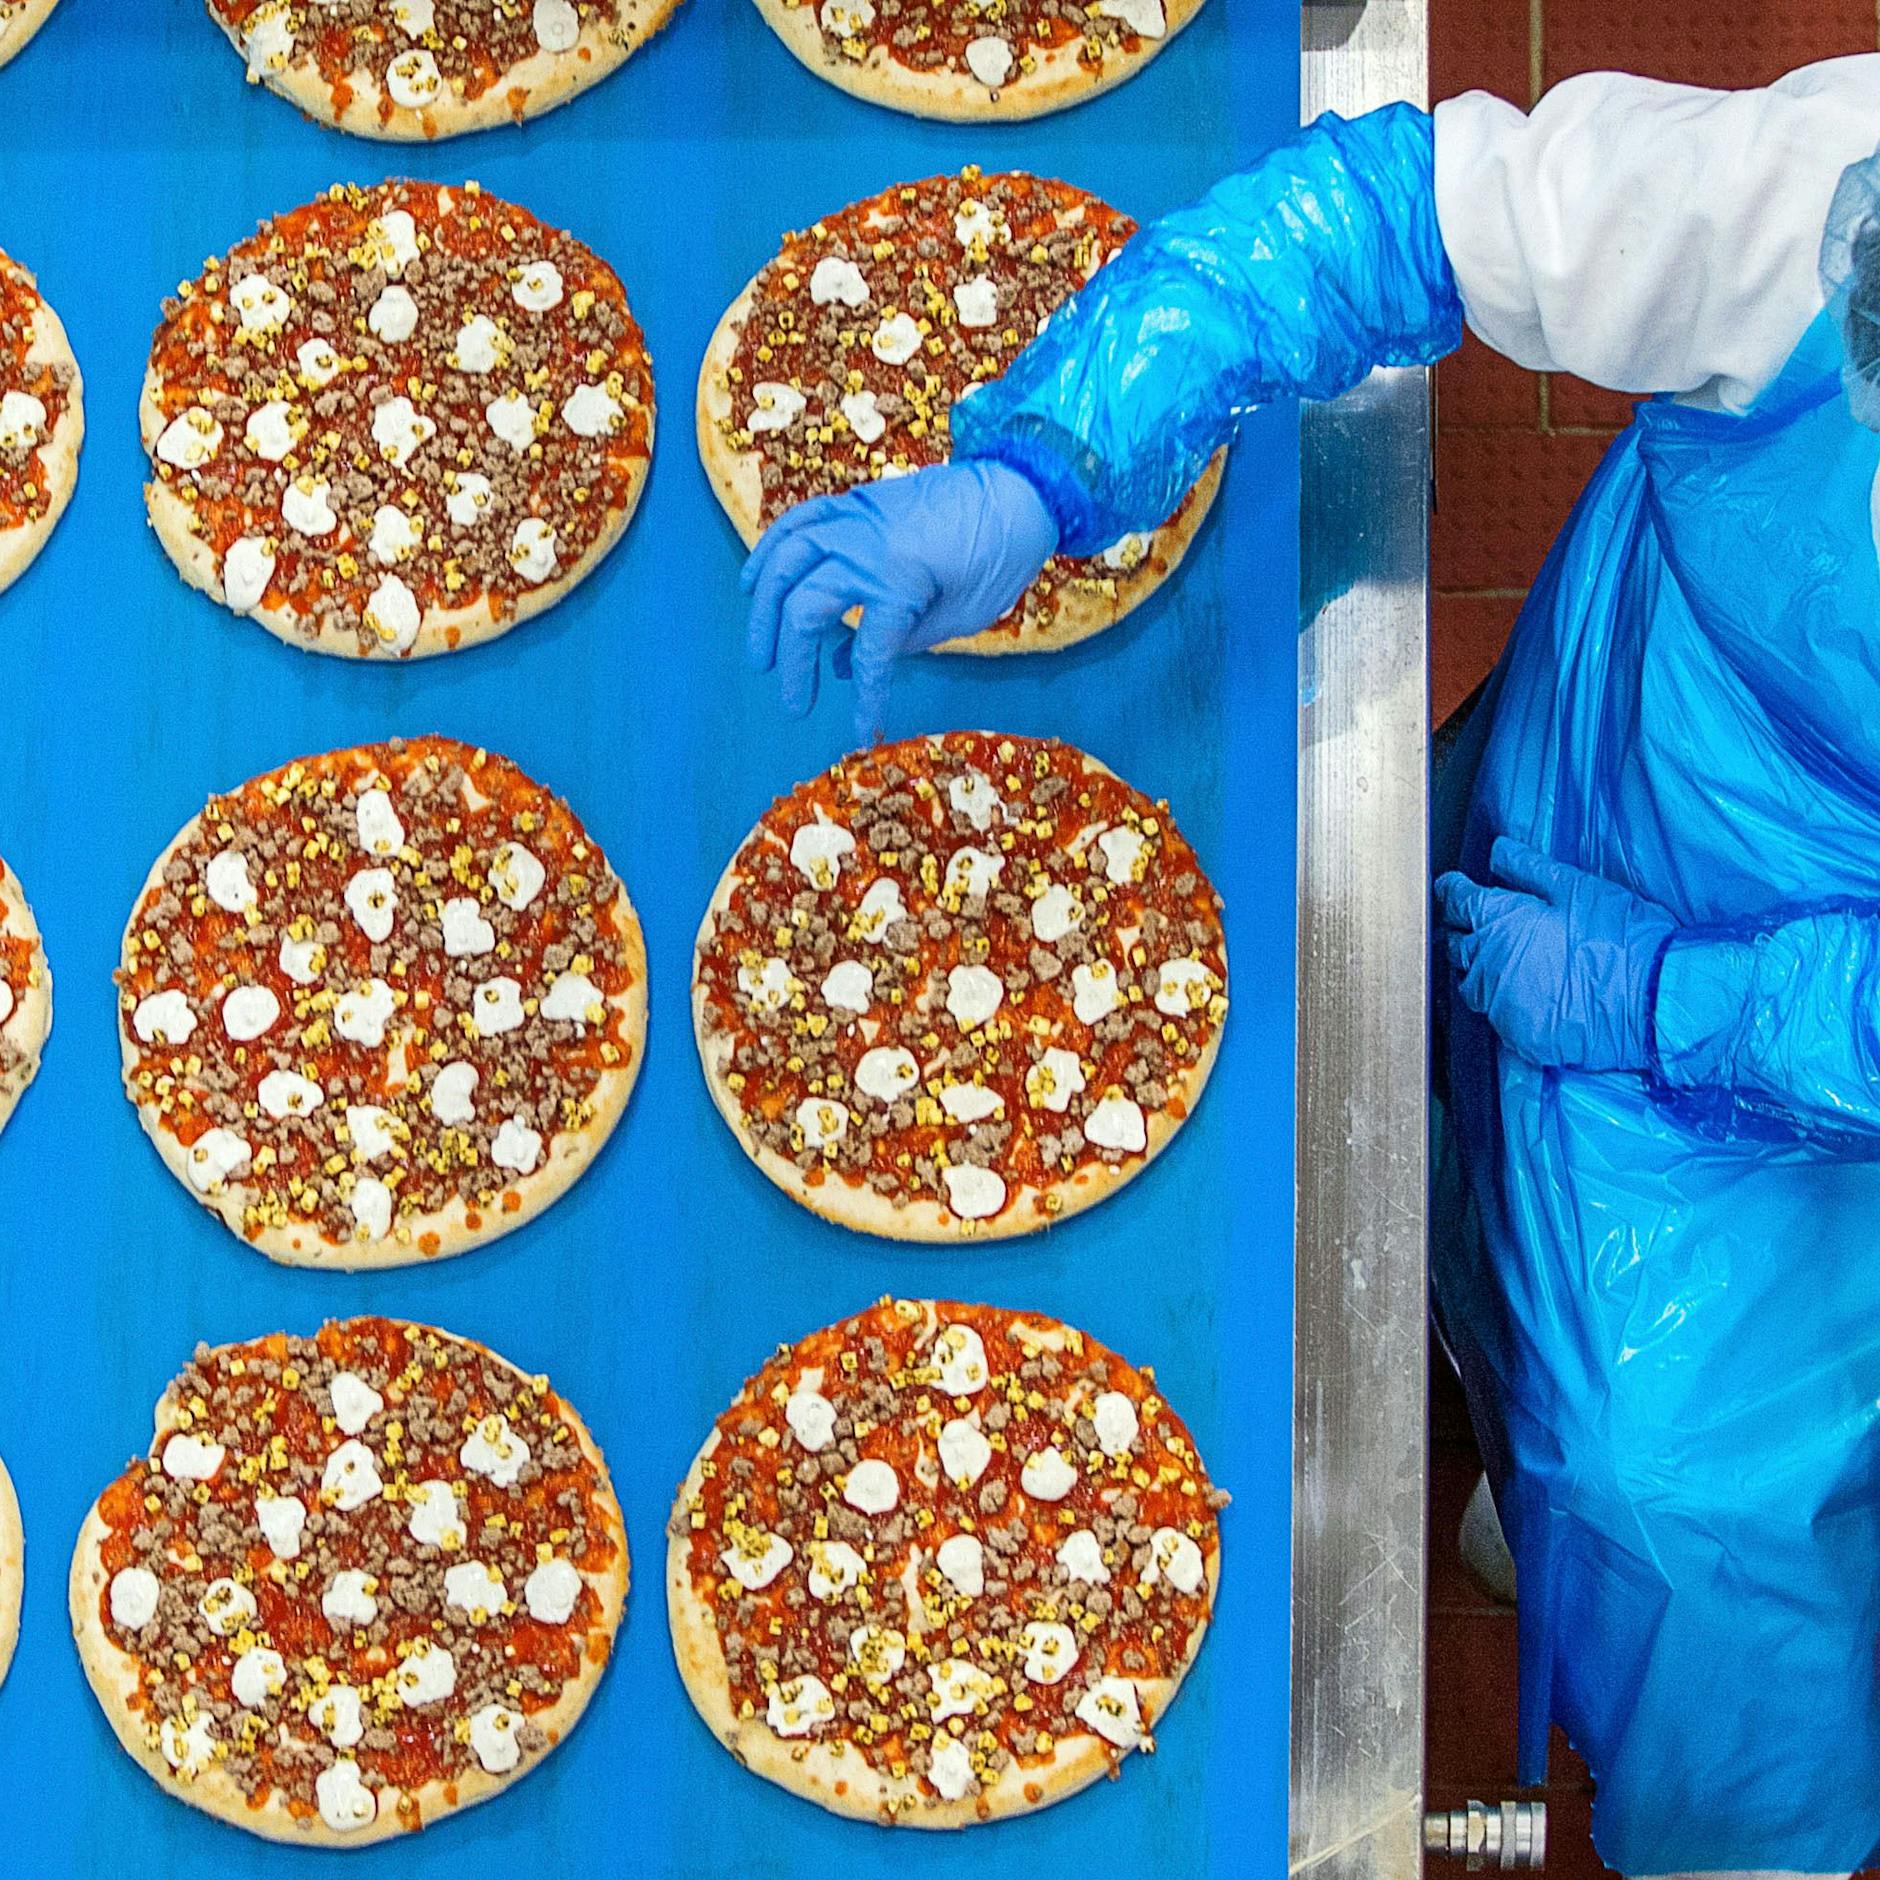 Politiker plant Supermarkt-Revolution: Staats-Rezepte für Pizza und Co.